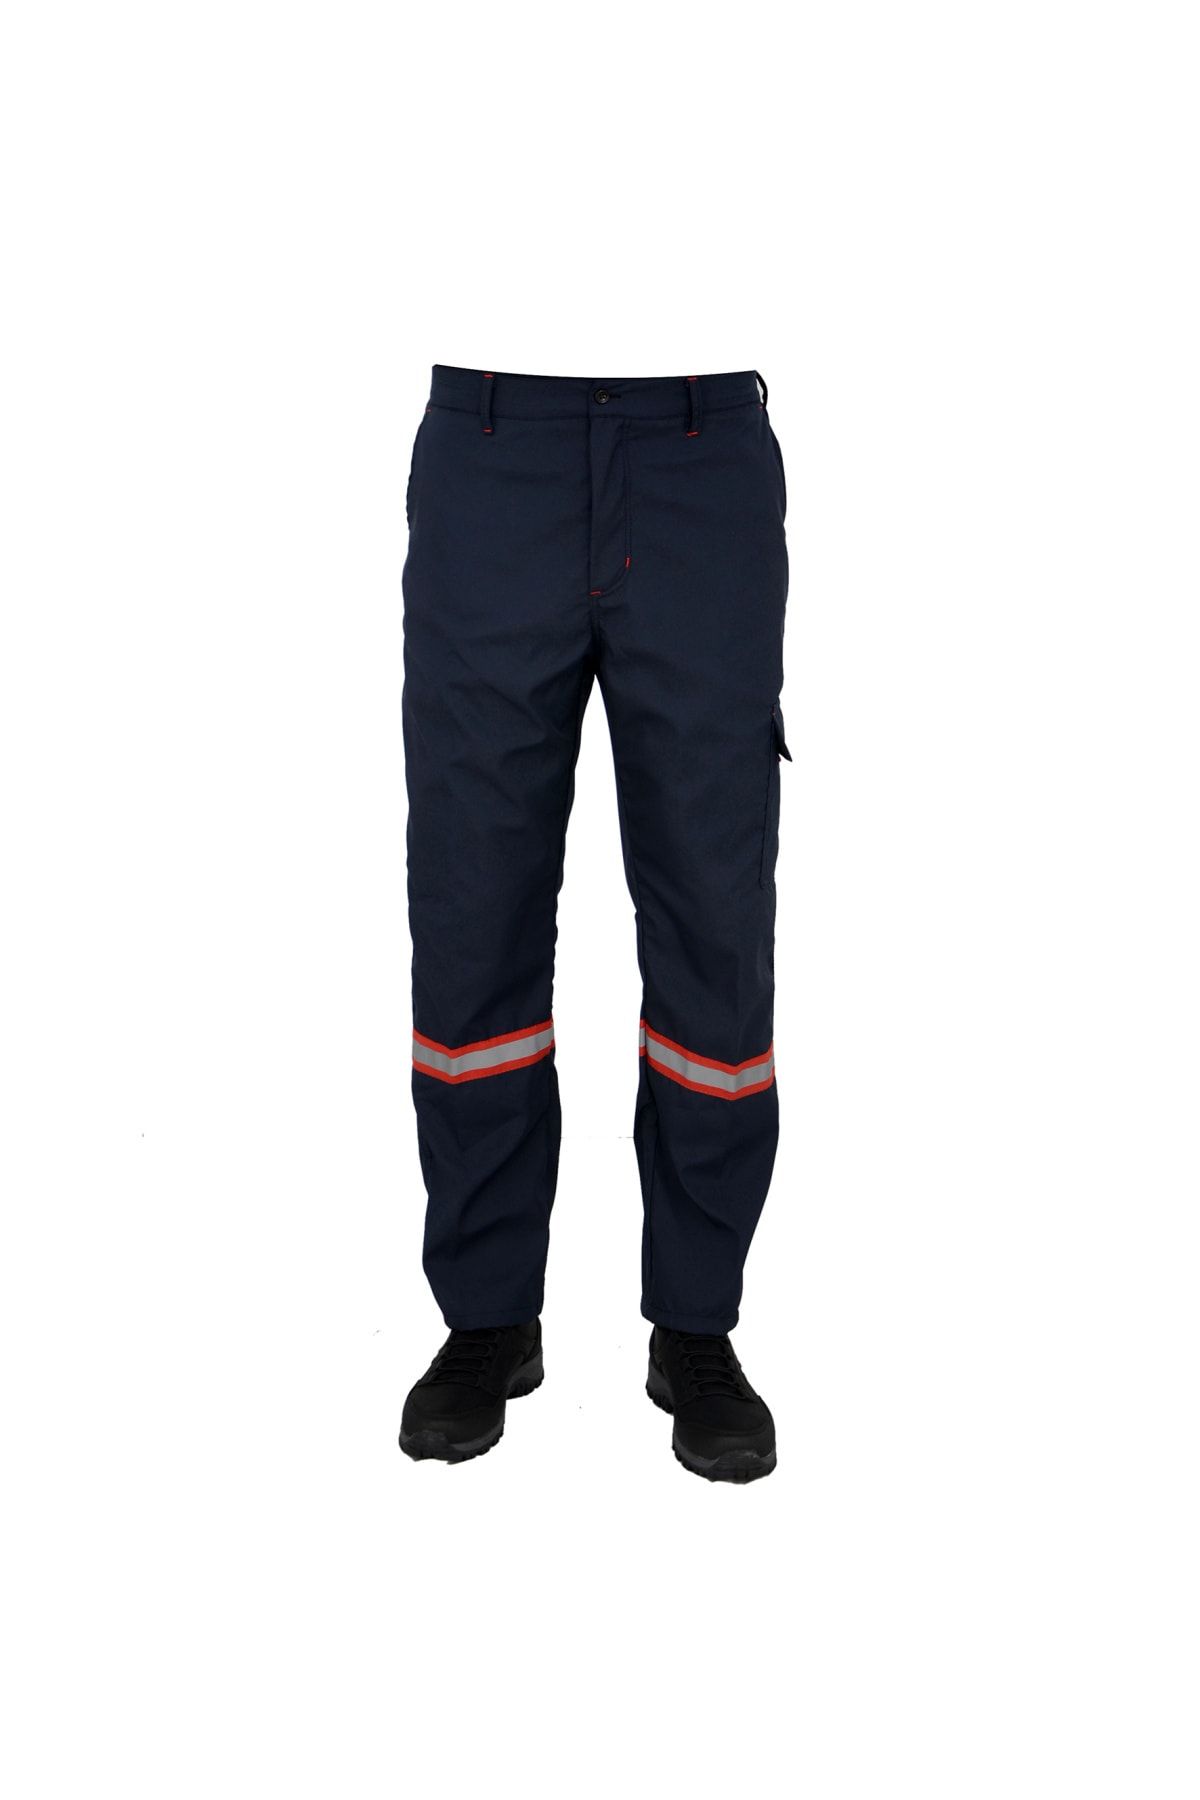 Tok İş Elbiseleri Su Geçirmez Paraşüt Pantolon Kışlık